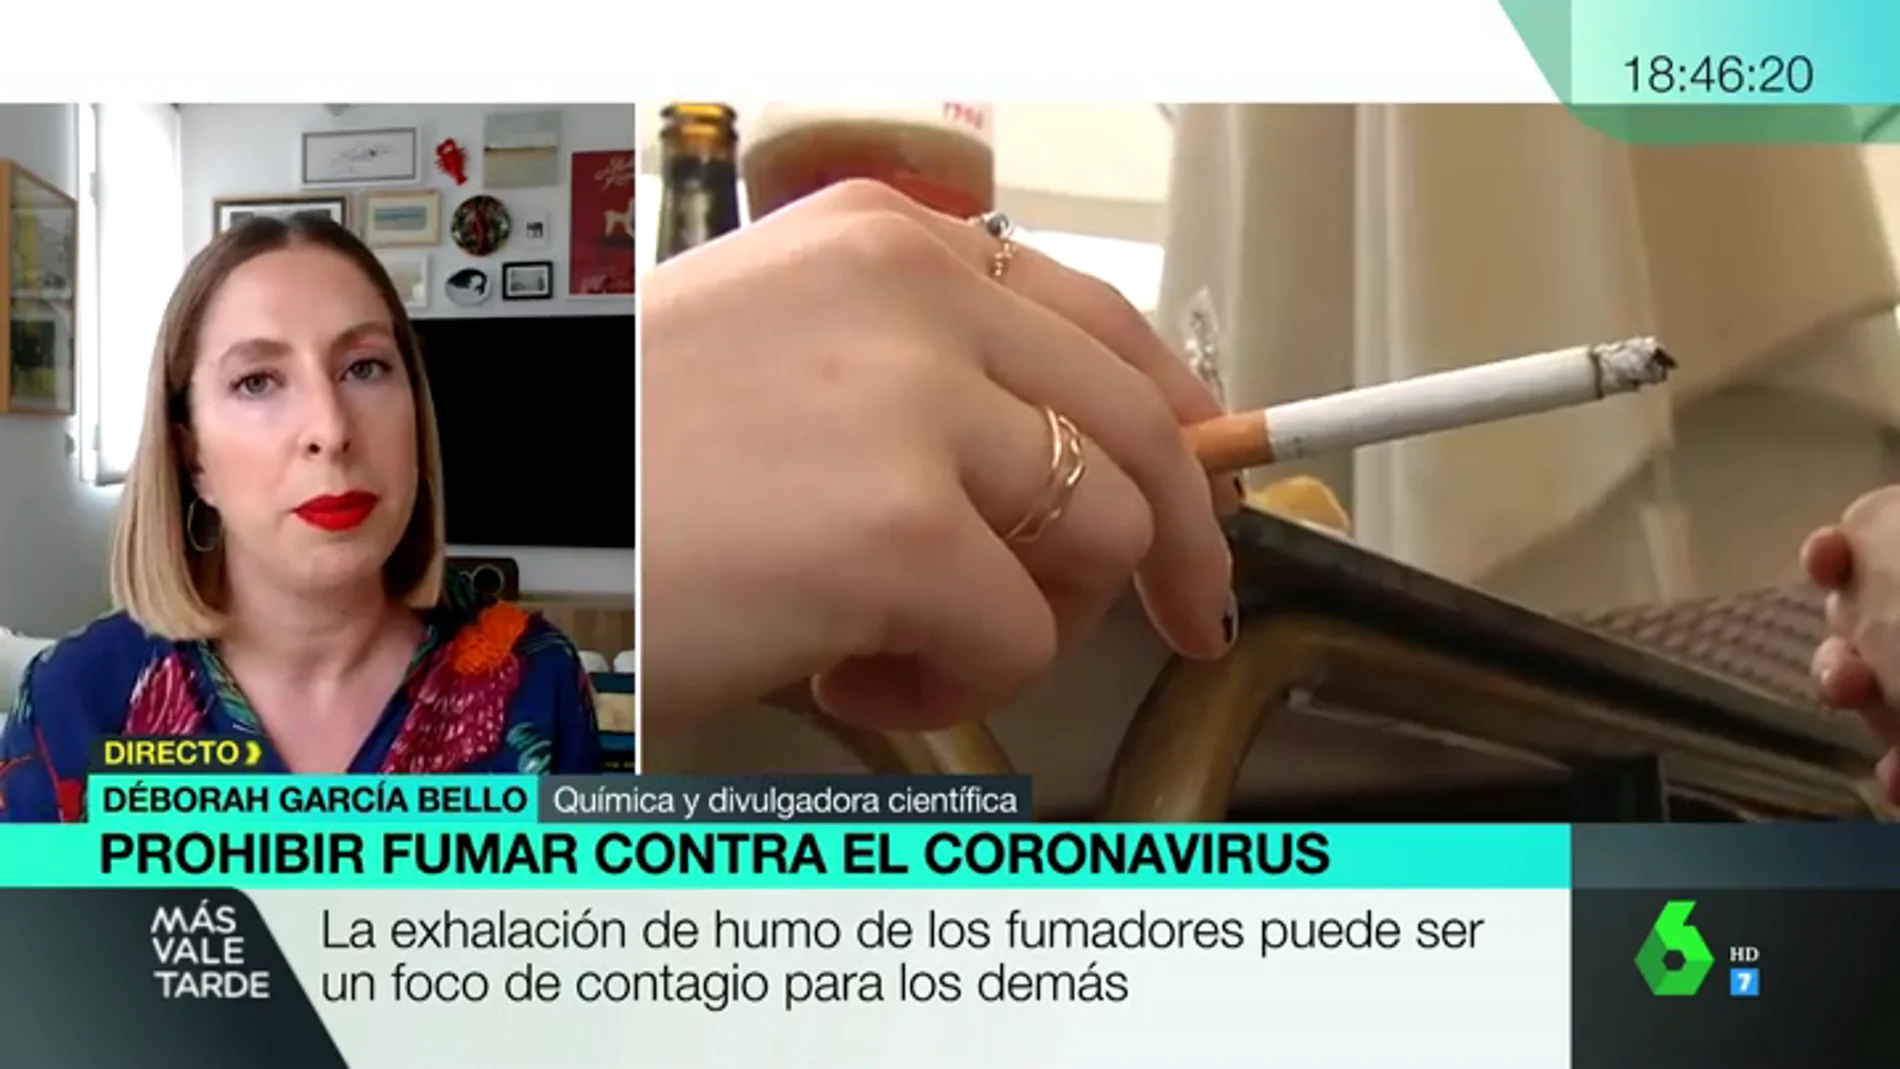 ¿Fumar realmente propaga el coronavirus? La evidencia científica tras la prohibición de Galicia